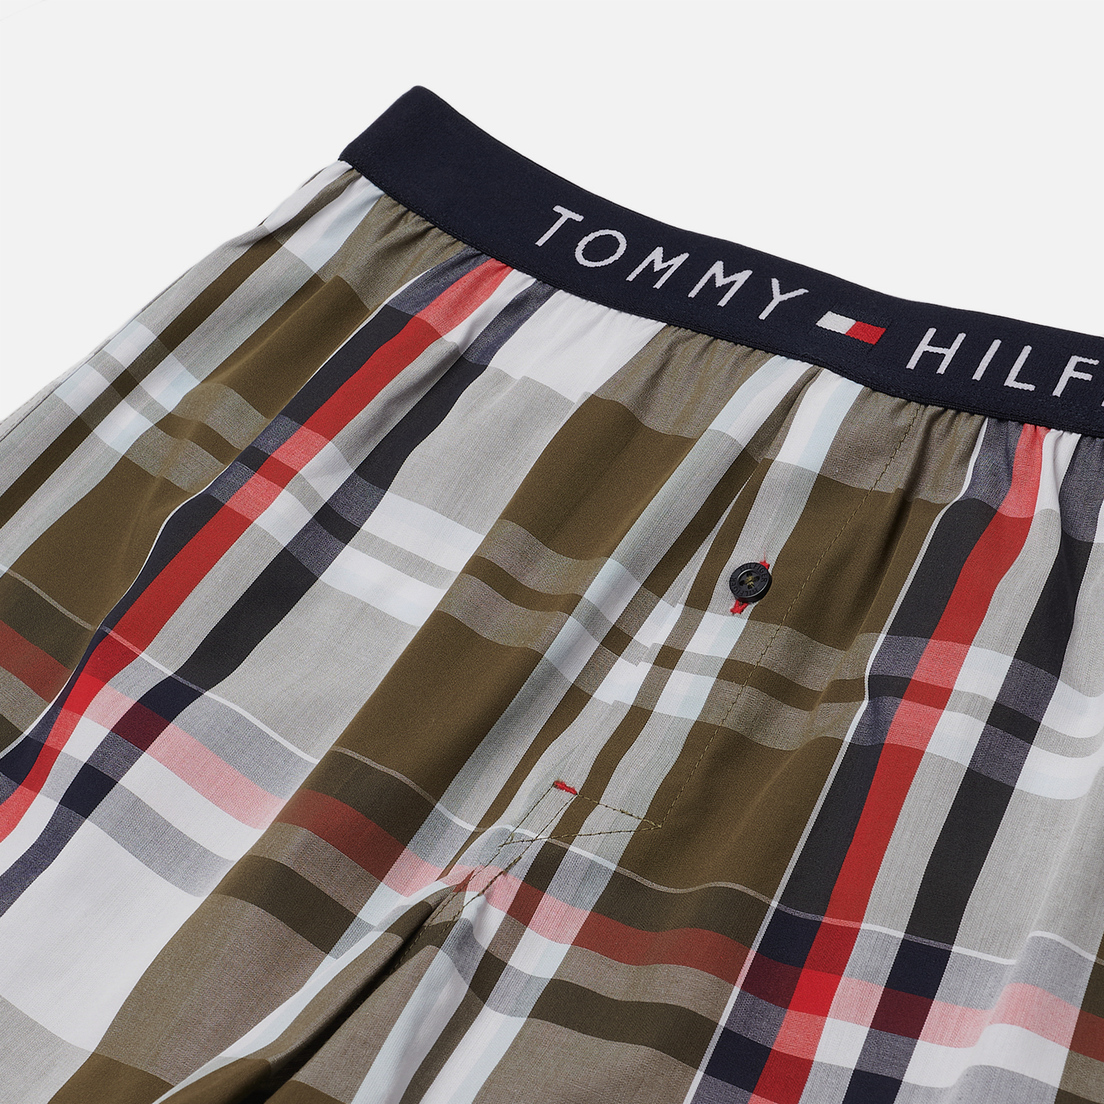 Tommy Hilfiger Underwear Мужские трусы Logo Waistband Cotton Boxer Print